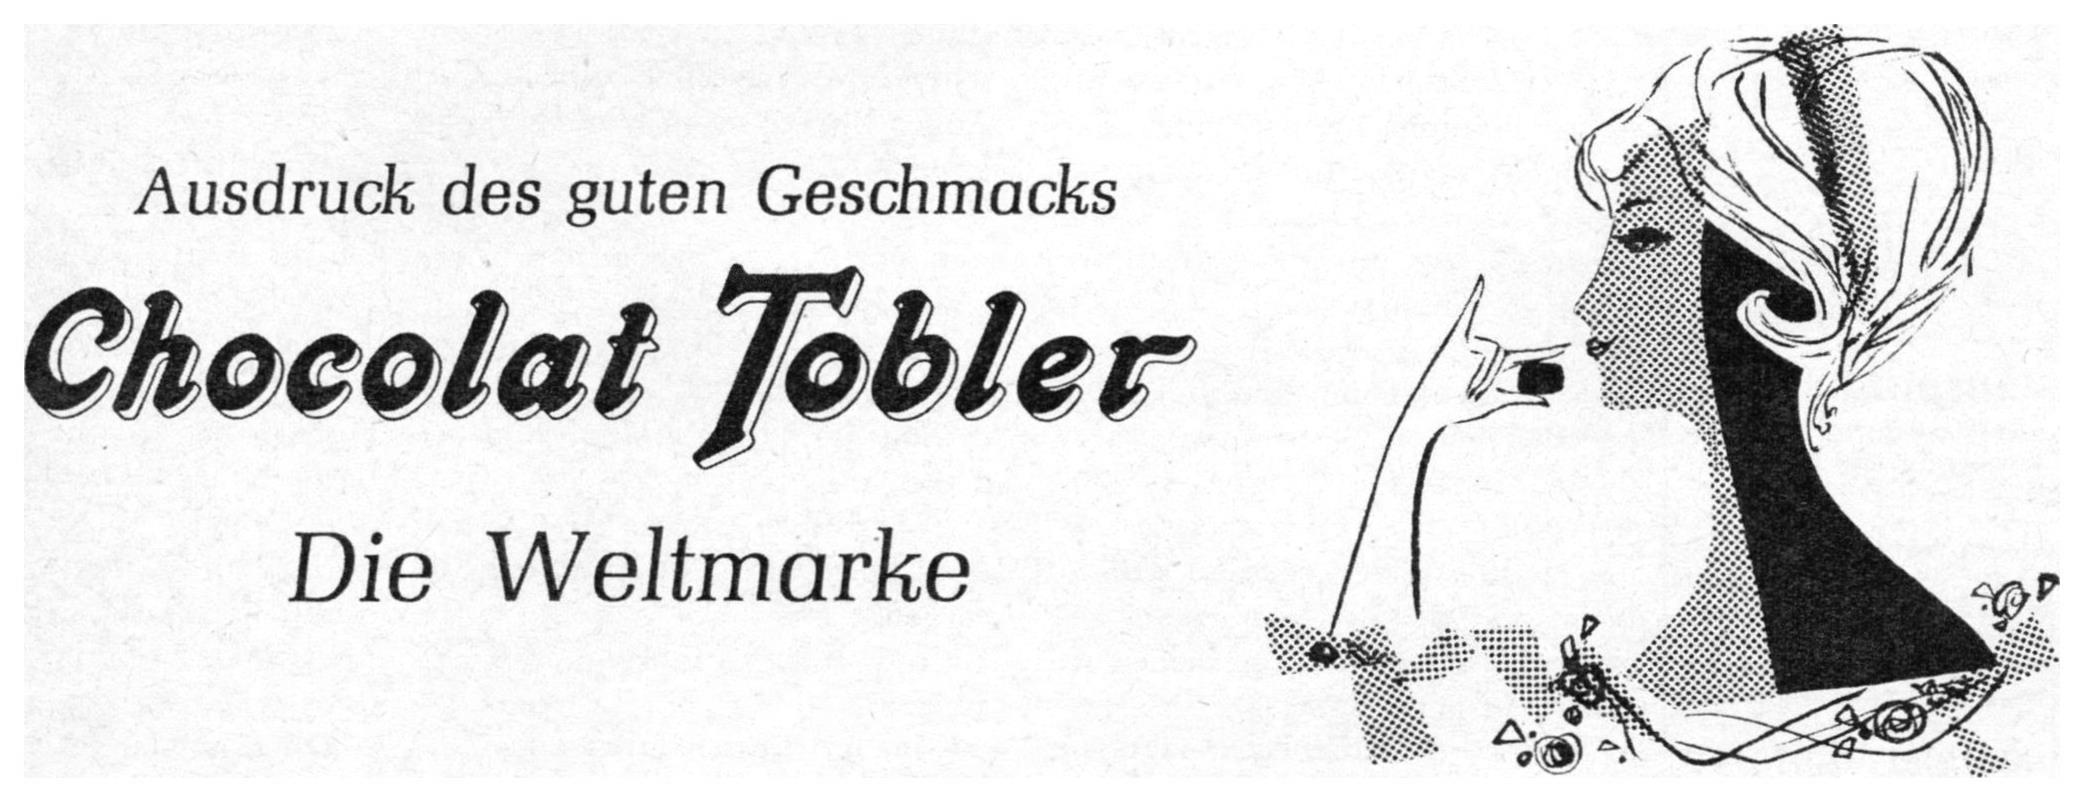 Tobler 1960 0.jpg